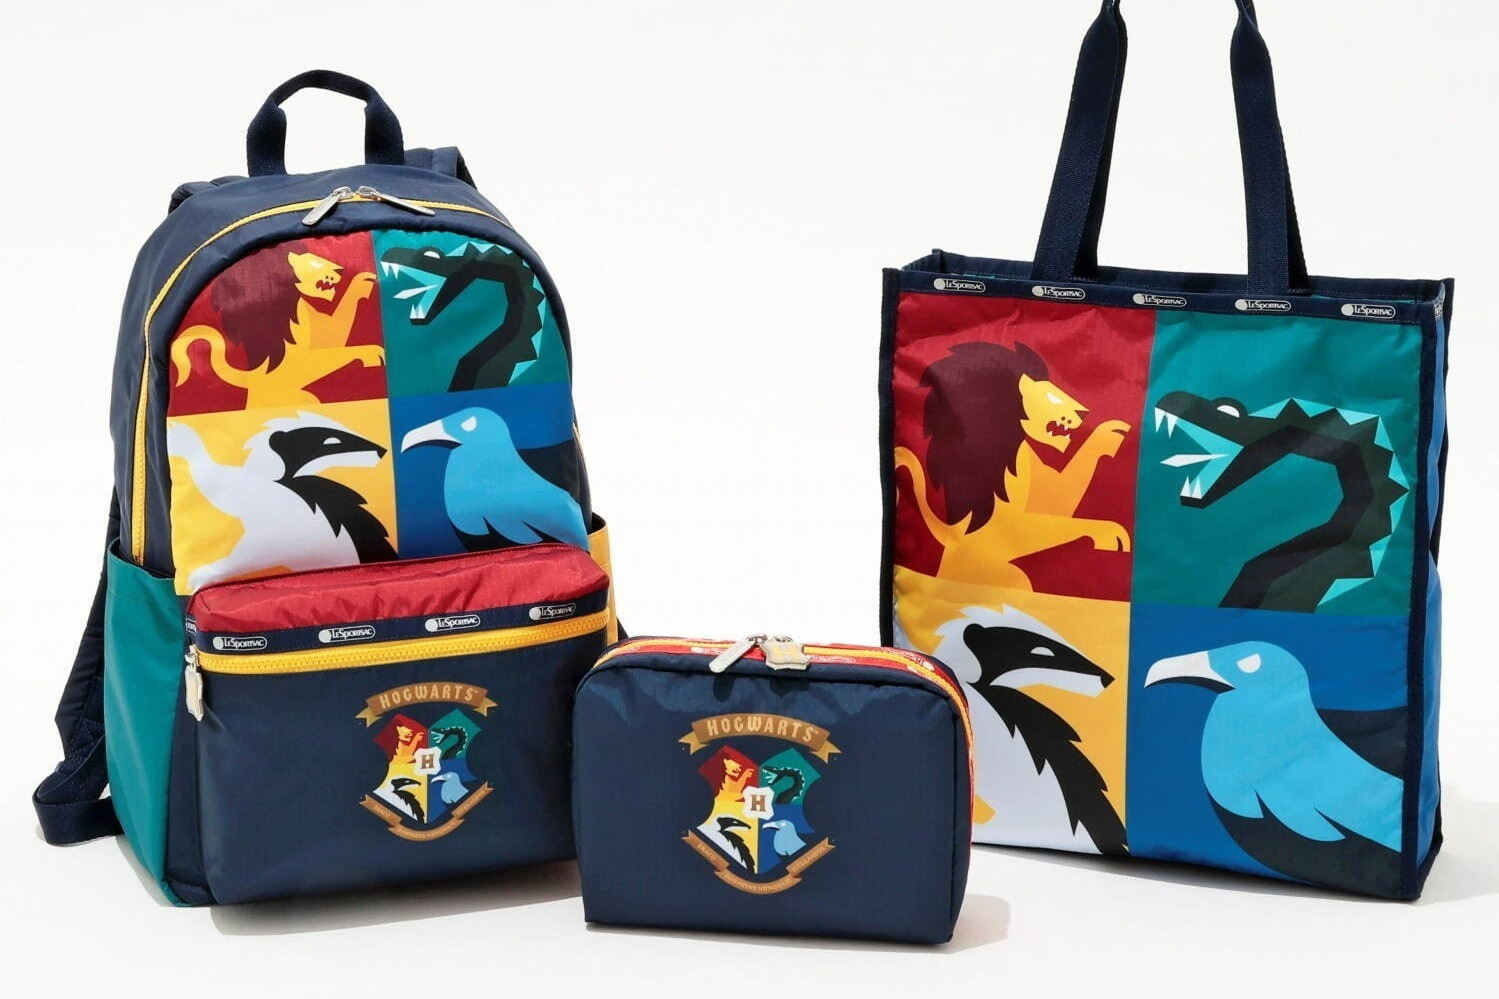 左から)Hogwarts Backpack 44×29×15cm 33,000円、Hogwarts XL Cosmetic 16×22×6cm 13,200円、Hogwarts Book Tote 38×35×11cm 26,400円